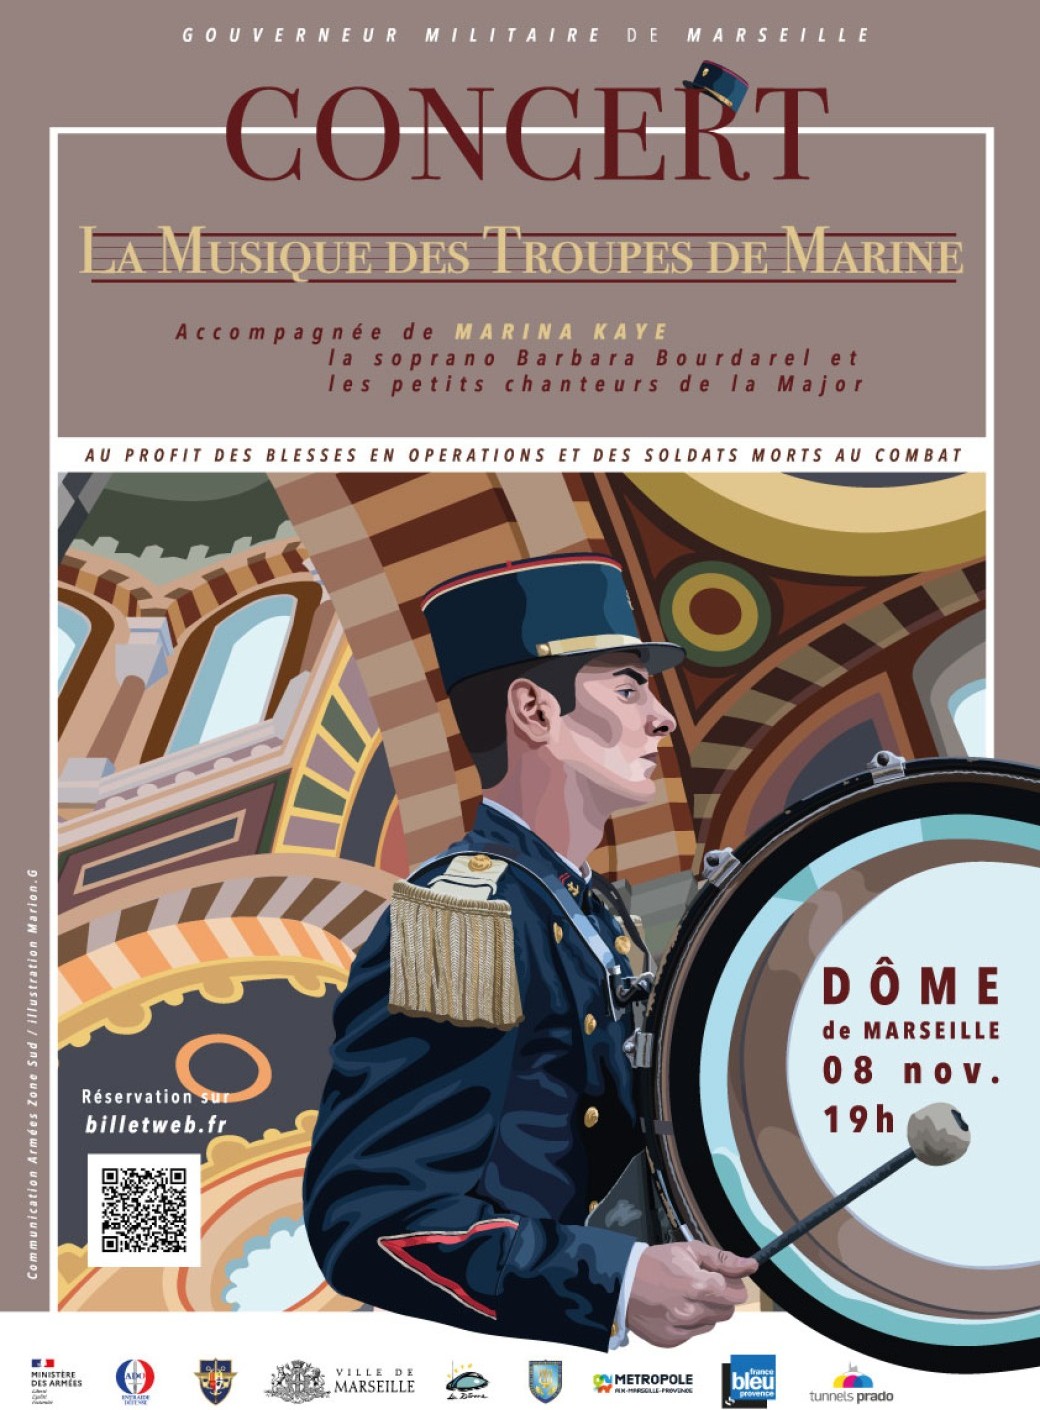 Concert du Gouverneur militaire de Marseille au profit des blessés en opérations